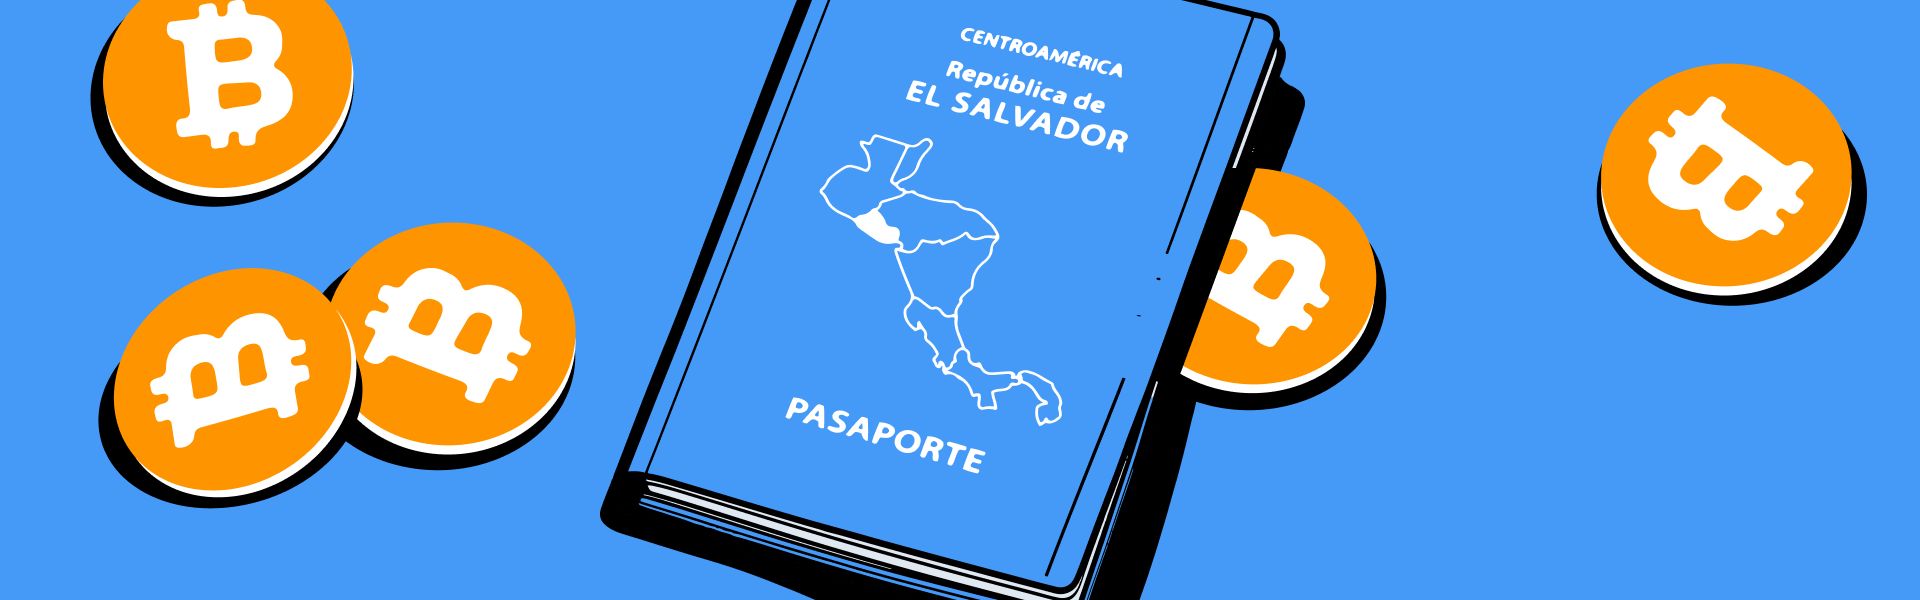 Сальвадор продає громадянство за $1 млн у BTC